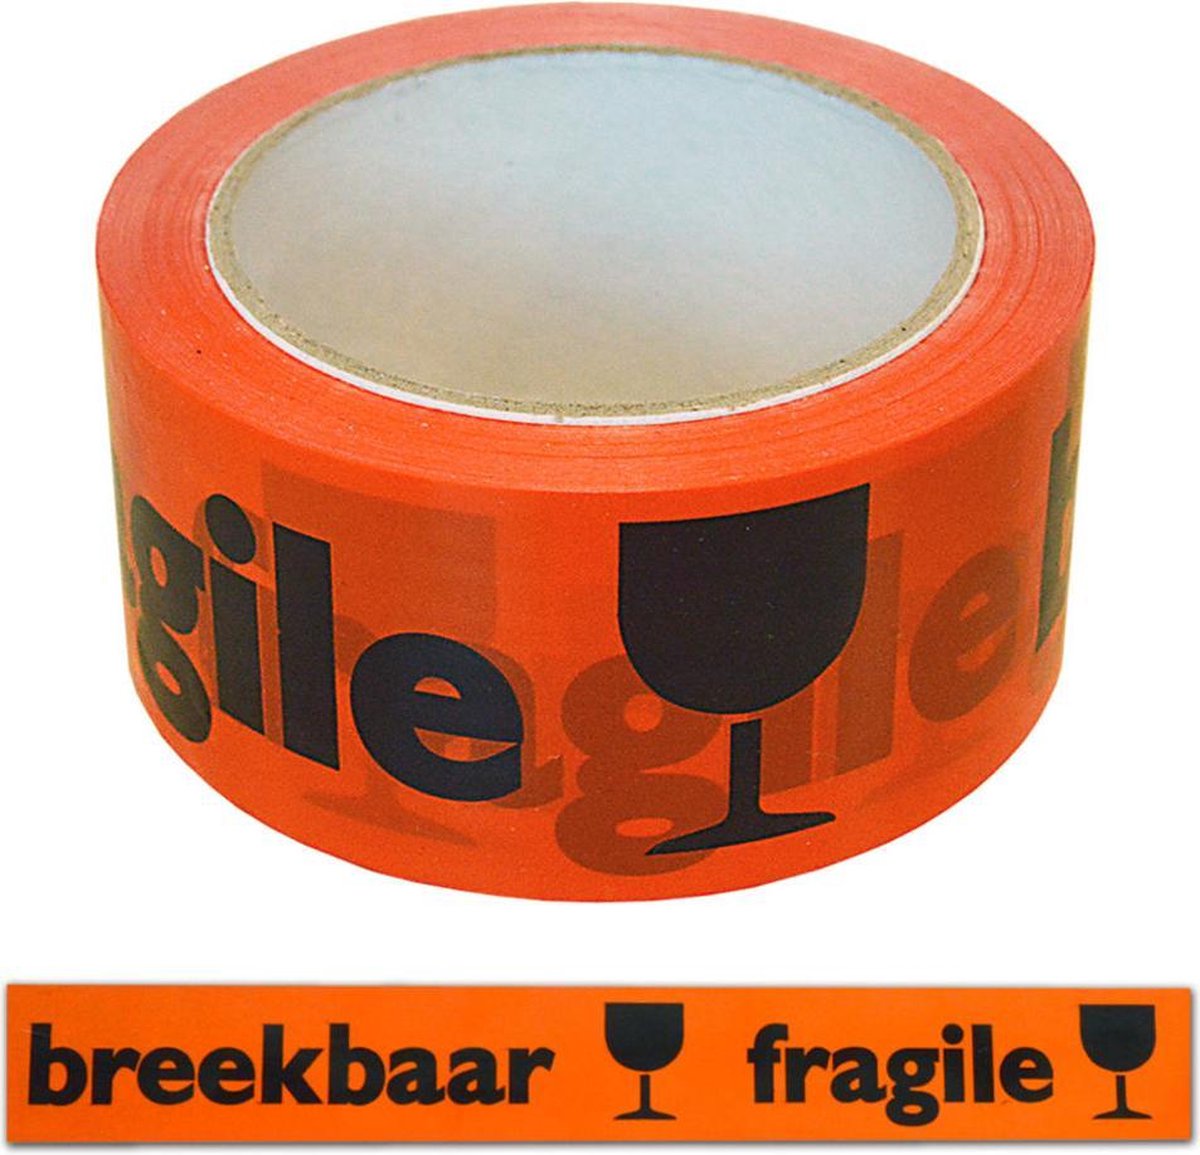 Breekbaar Tape Oranje/Zwart - verpakking van 2 rol Breekbaar tape